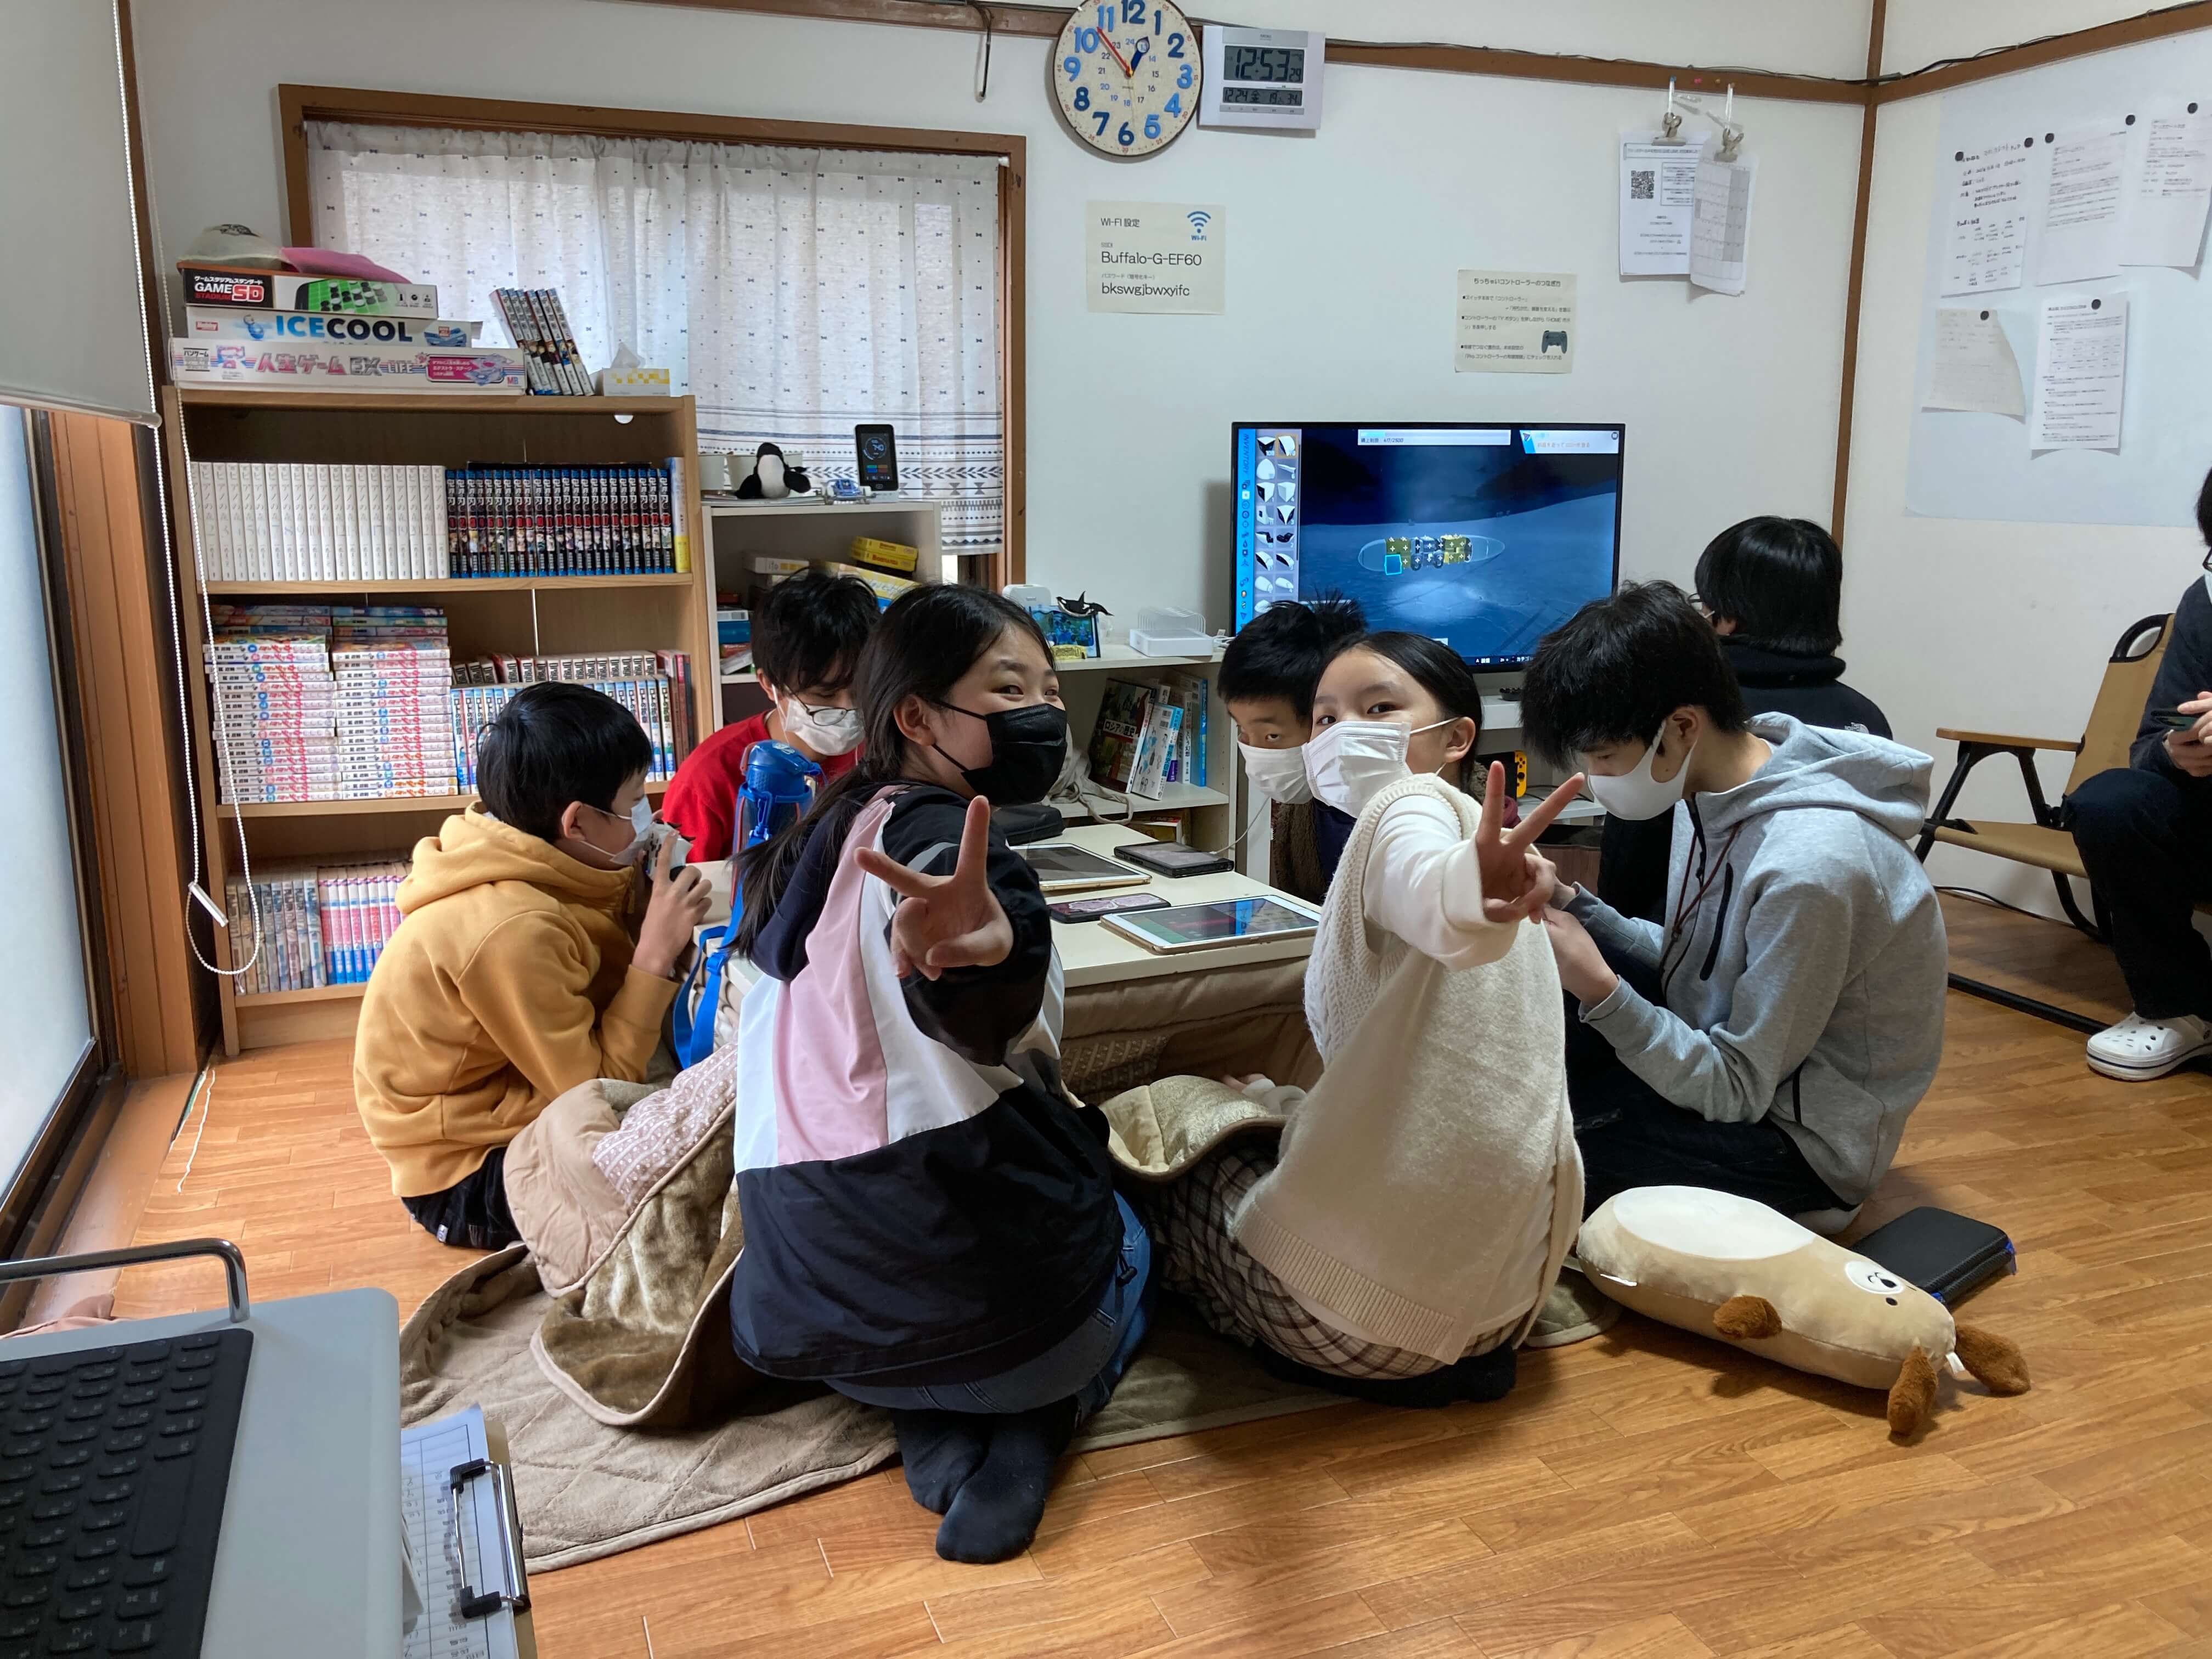 フリースクール ネモ Npo法人ネモネット フリースクール ネモ 不登校 ひきこもり 千葉県内のネットワーク